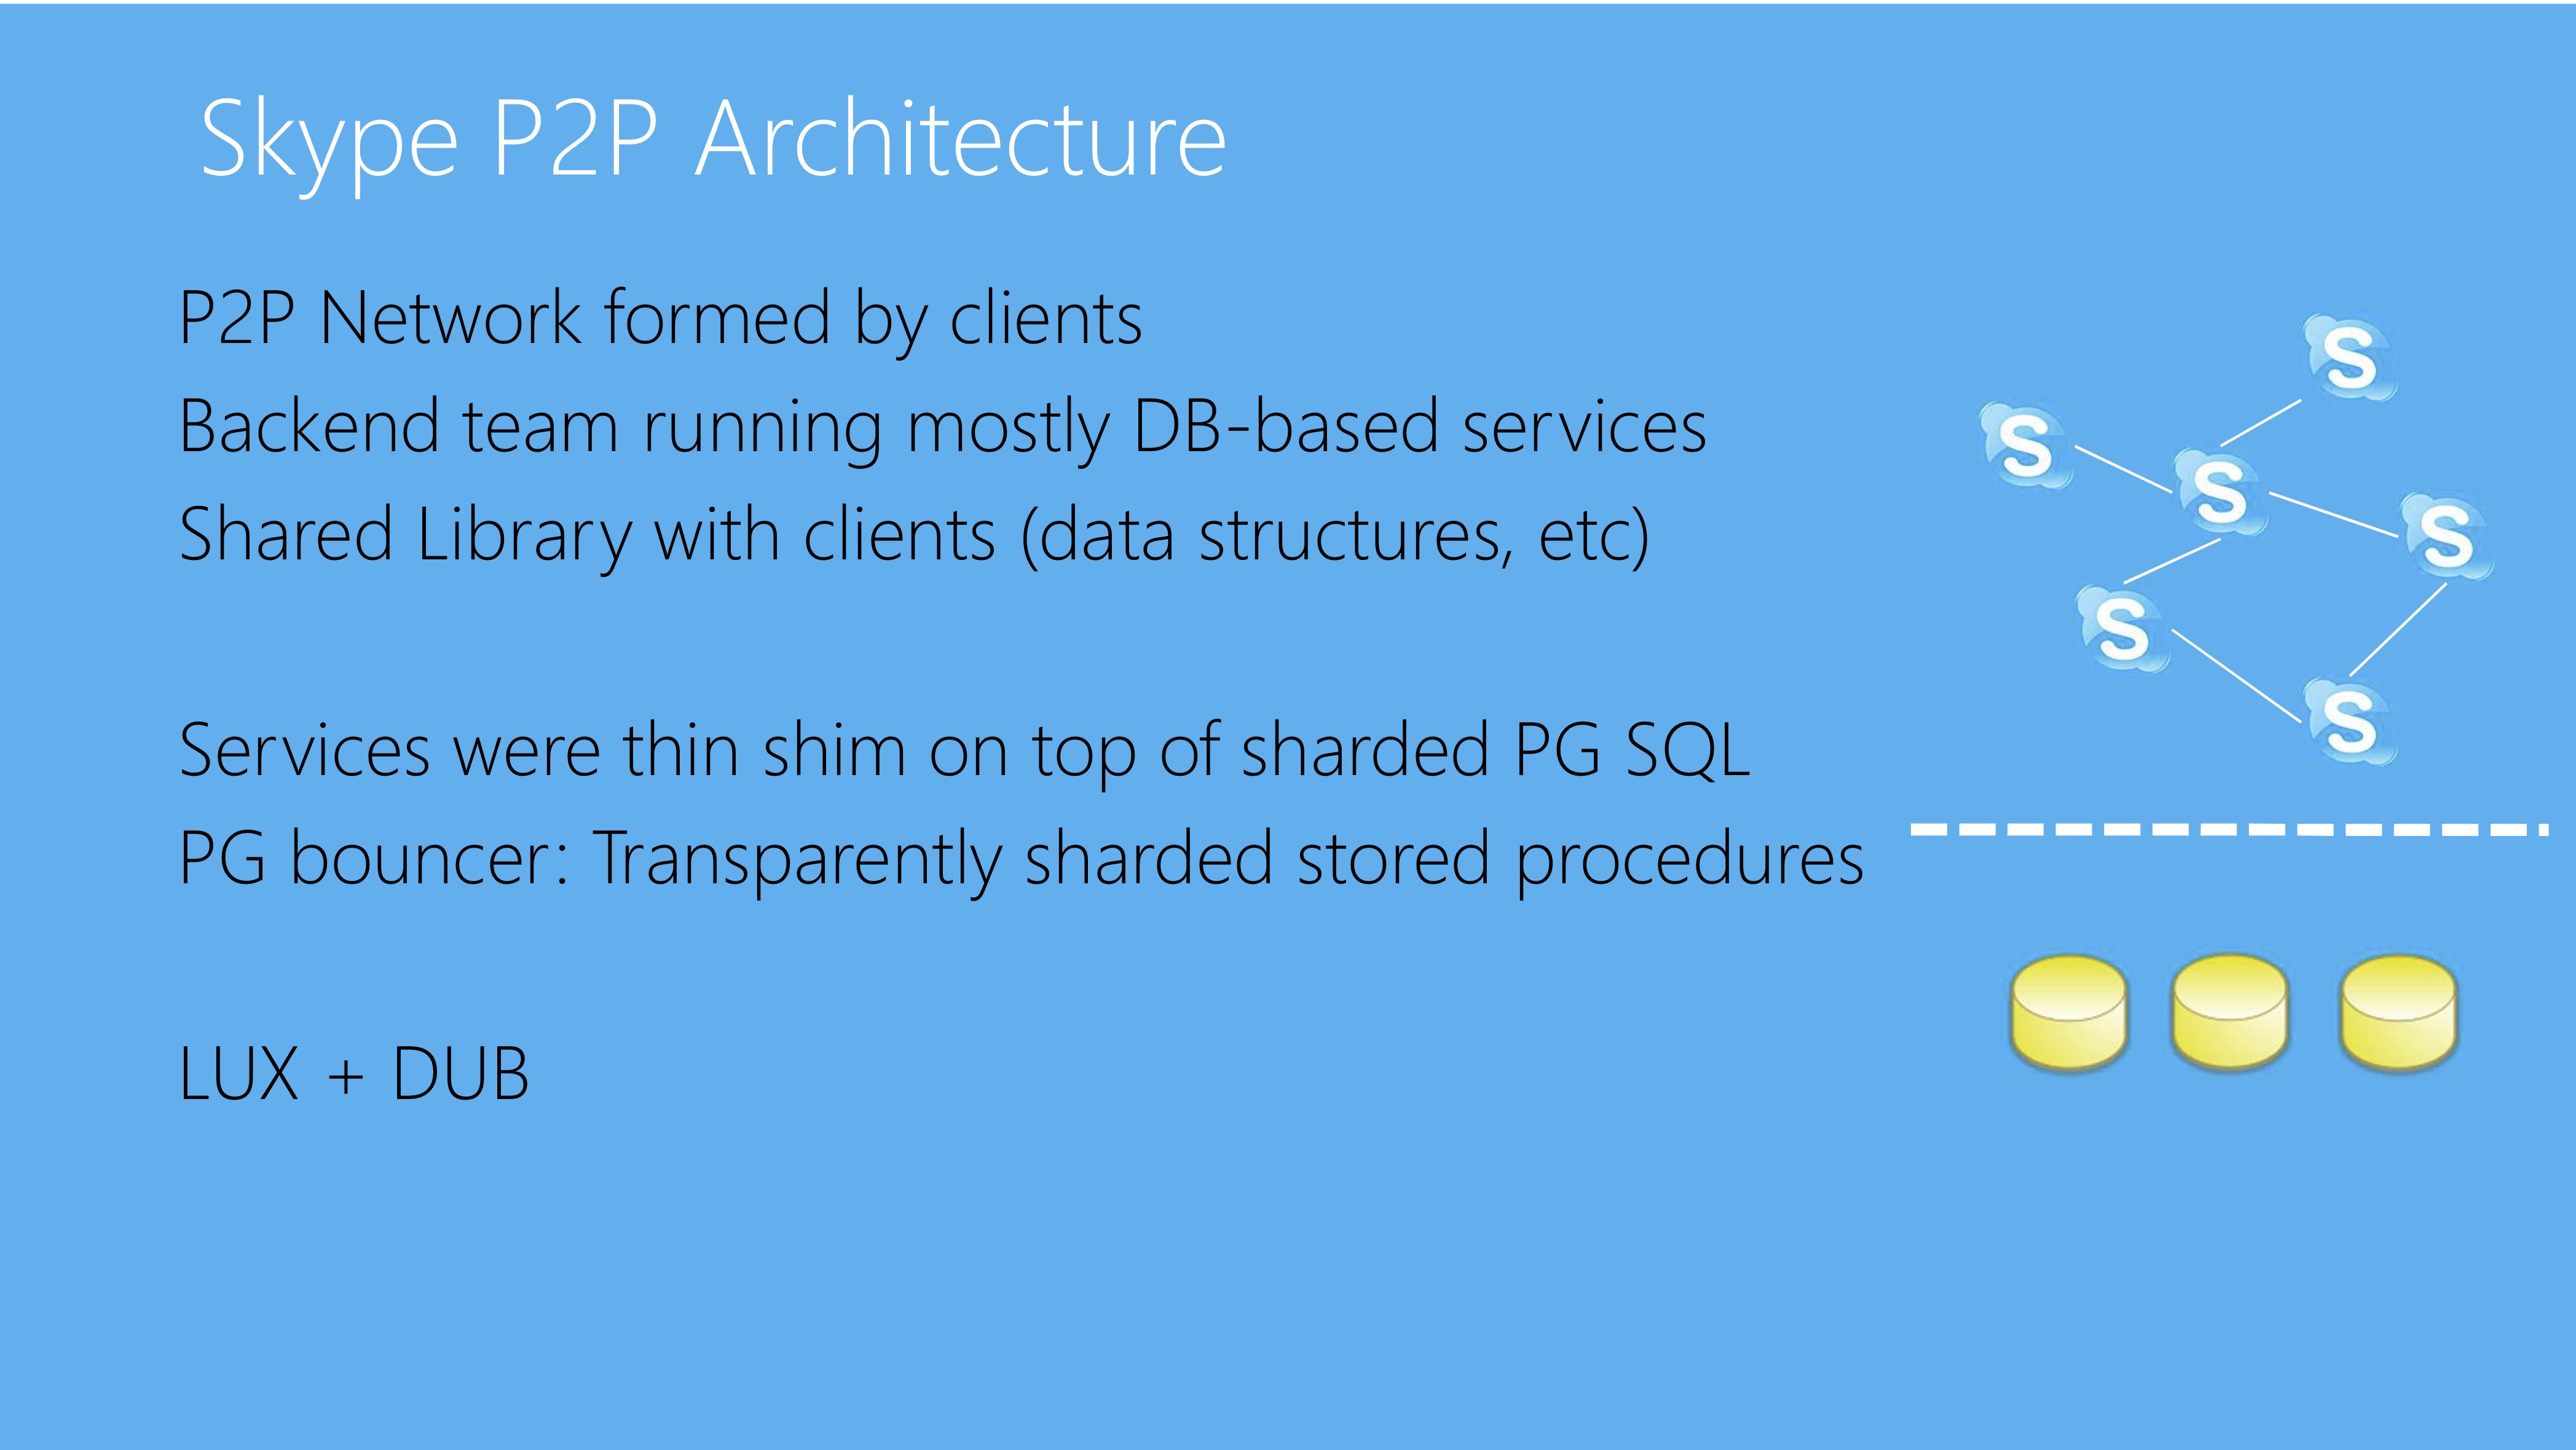 Übersicht der initialen P2P-Architektur von Skype